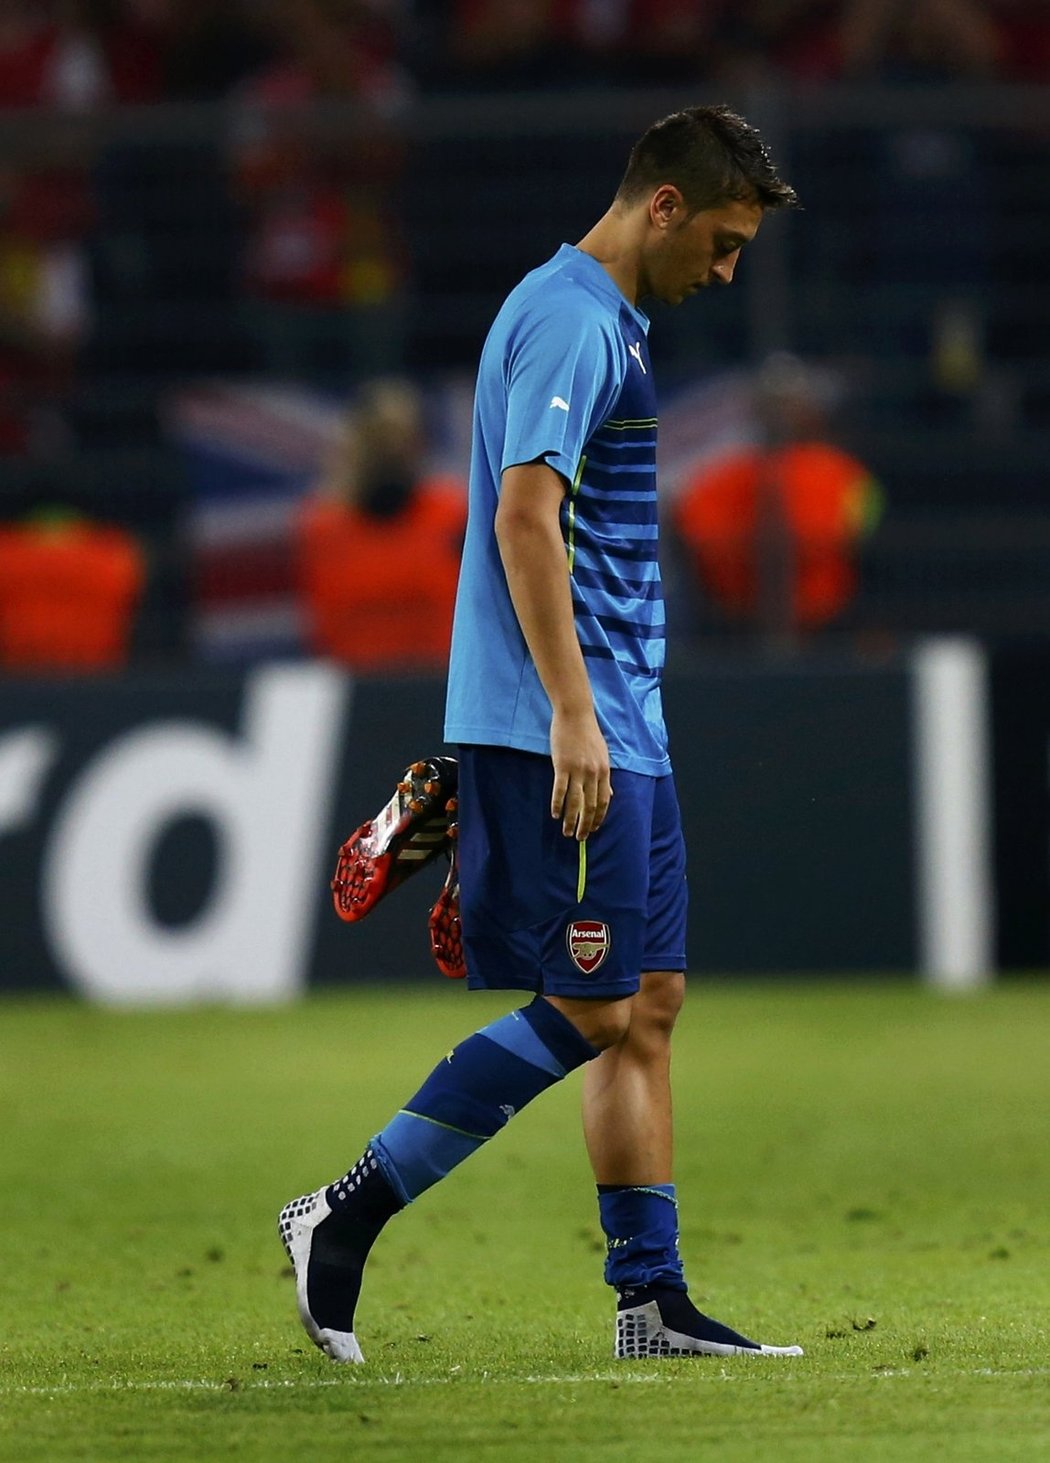 Zklamaný Mesut Özil po dalším matném výkonu Arsenalu opouštěl hřiště se svěšenou hlavou